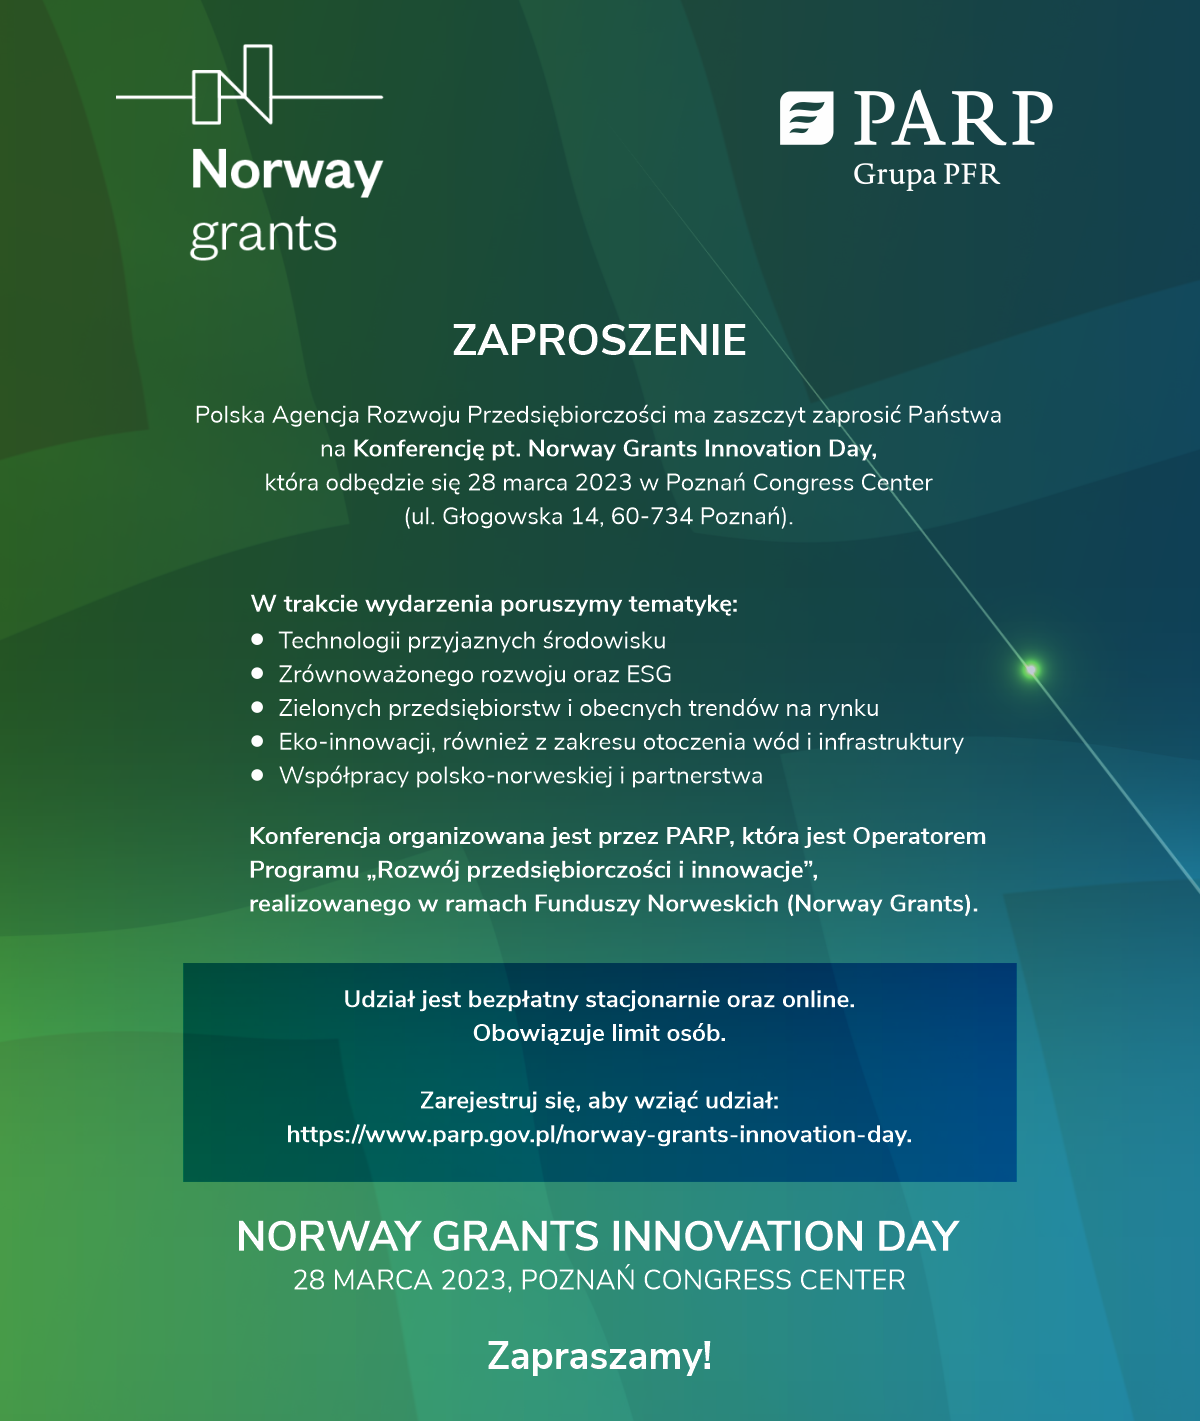 W imieniu Polskiej Agencji Rozwoju przedsiębiorczości mam zaszczyt zaprosić Państwa na konferencję pt. Norway Grants Innovation Day, która organizowana jest w ramach realizacji programu Funduszy Norweskich w Polsce. Wydarzenie poświęcone jest tematyce innowacji i technologii przyjaznych środowisku, również z uwzględnieniem rozwiązań dla wód śródlądowych i morskich. Podczas spotkania będziemy poruszać zagadnienia nawiązujące do zrównoważonego rozwoju w firmach oraz w ich bezpośrednim otoczeniu. Przyjrzymy się temu jaki wpływ mają przedsiębiorcy na swój biznes oraz na środowisko w którym pracują. Poznamy eko-innowacje i rozwiązania na miarę dzisiejszych czasów i trendów na rynku. Będziemy inspirować się również Norwegią i ich podejściem do relacji i współpracy biznesowej. Konferencja odbędzie się stacjonarnie 28 marca br. w Poznaniu (Poznań Congress Center, ul Głogowska 14, 60-734). Dostępna będzie również transmisja na żywo na stronie internetowej oraz Facebook PARP. Planowany start o godz. 10:00. Udział jest bezpłatny zarówno stacjonarnie, jak i online. Na miejscu obowiązuje limit osób, więc niezbędna jest wcześniejsza rejestracja. Więcej informacji oraz możliwość rejestracji dostępne są w załączonym zaproszeniu oraz na stronie internetowej: https://www.parp.gov.pl/norway-grants-innovation-day. Serdecznie zapraszamy!